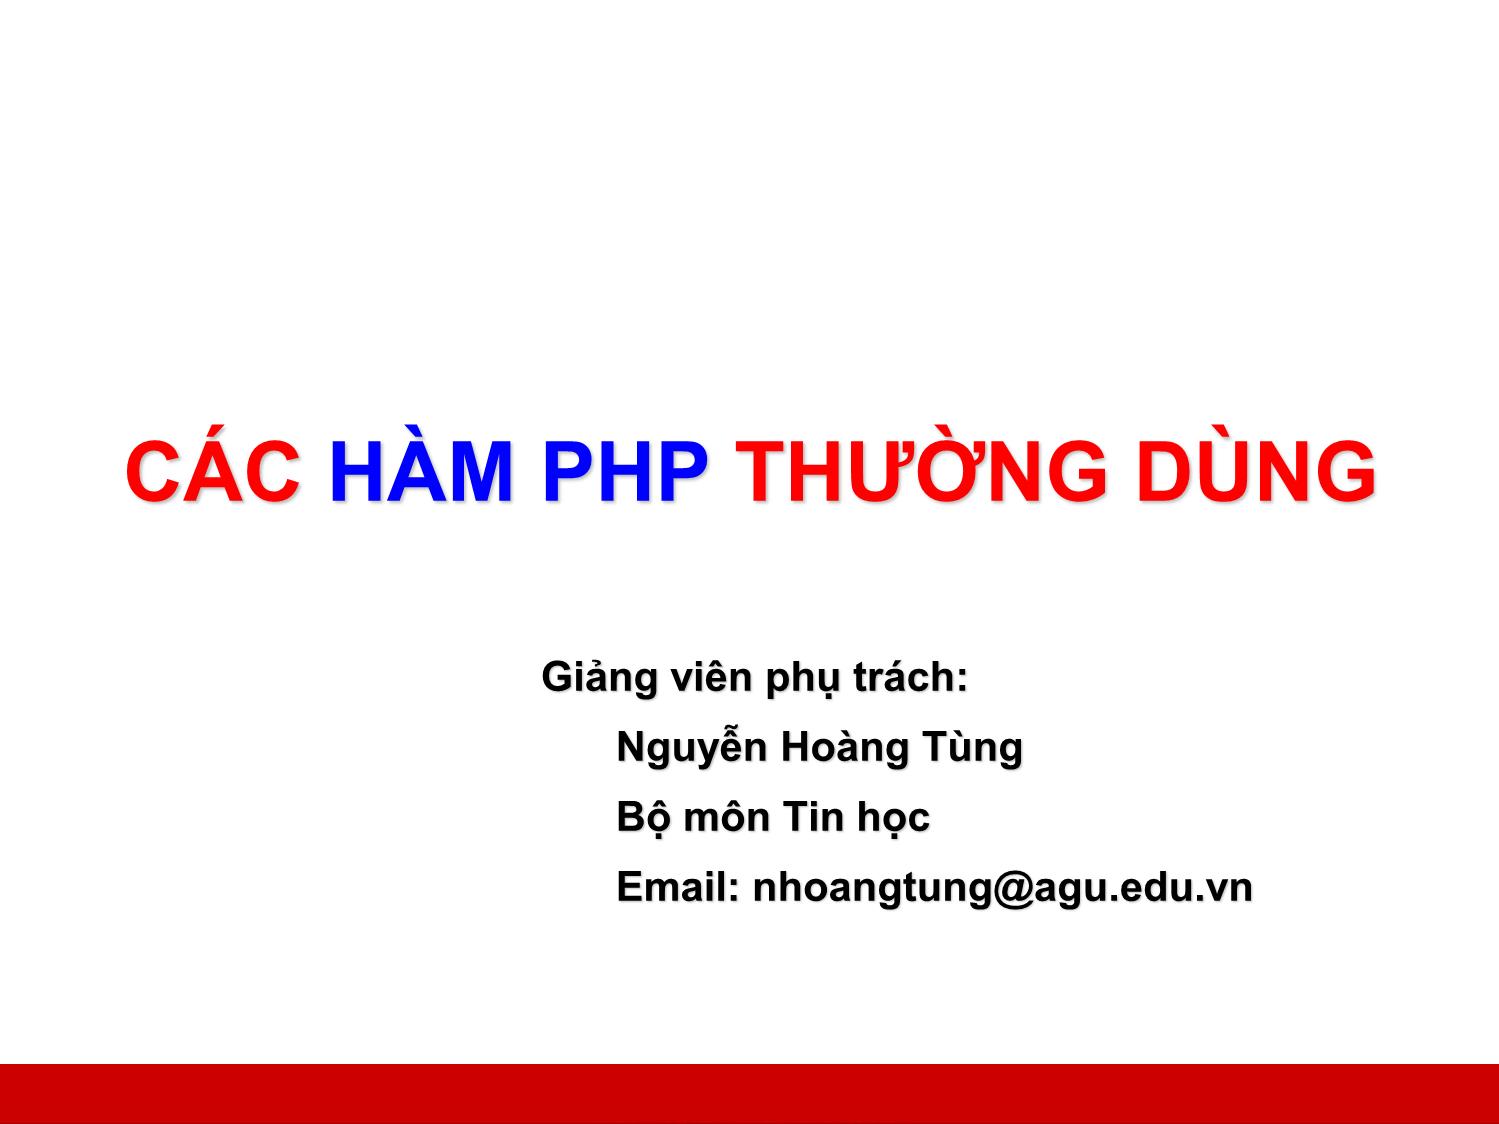 Bài giảng Công nghệ Web và ứng dụng - Bài 1: Các hàm PHP thường dùng - Nguyễn Hoàng Tùng trang 1